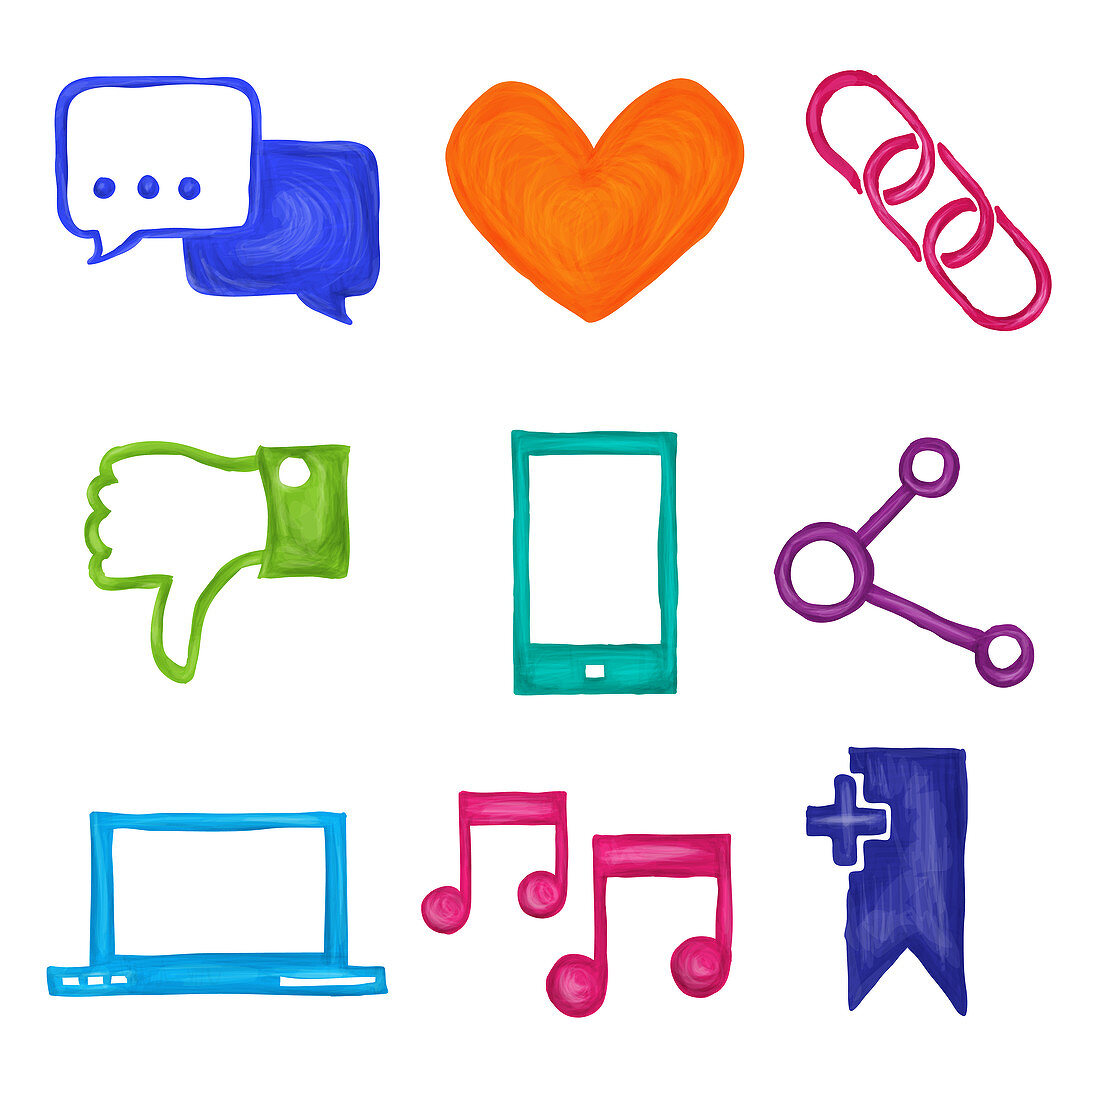 Social media icons, illustration